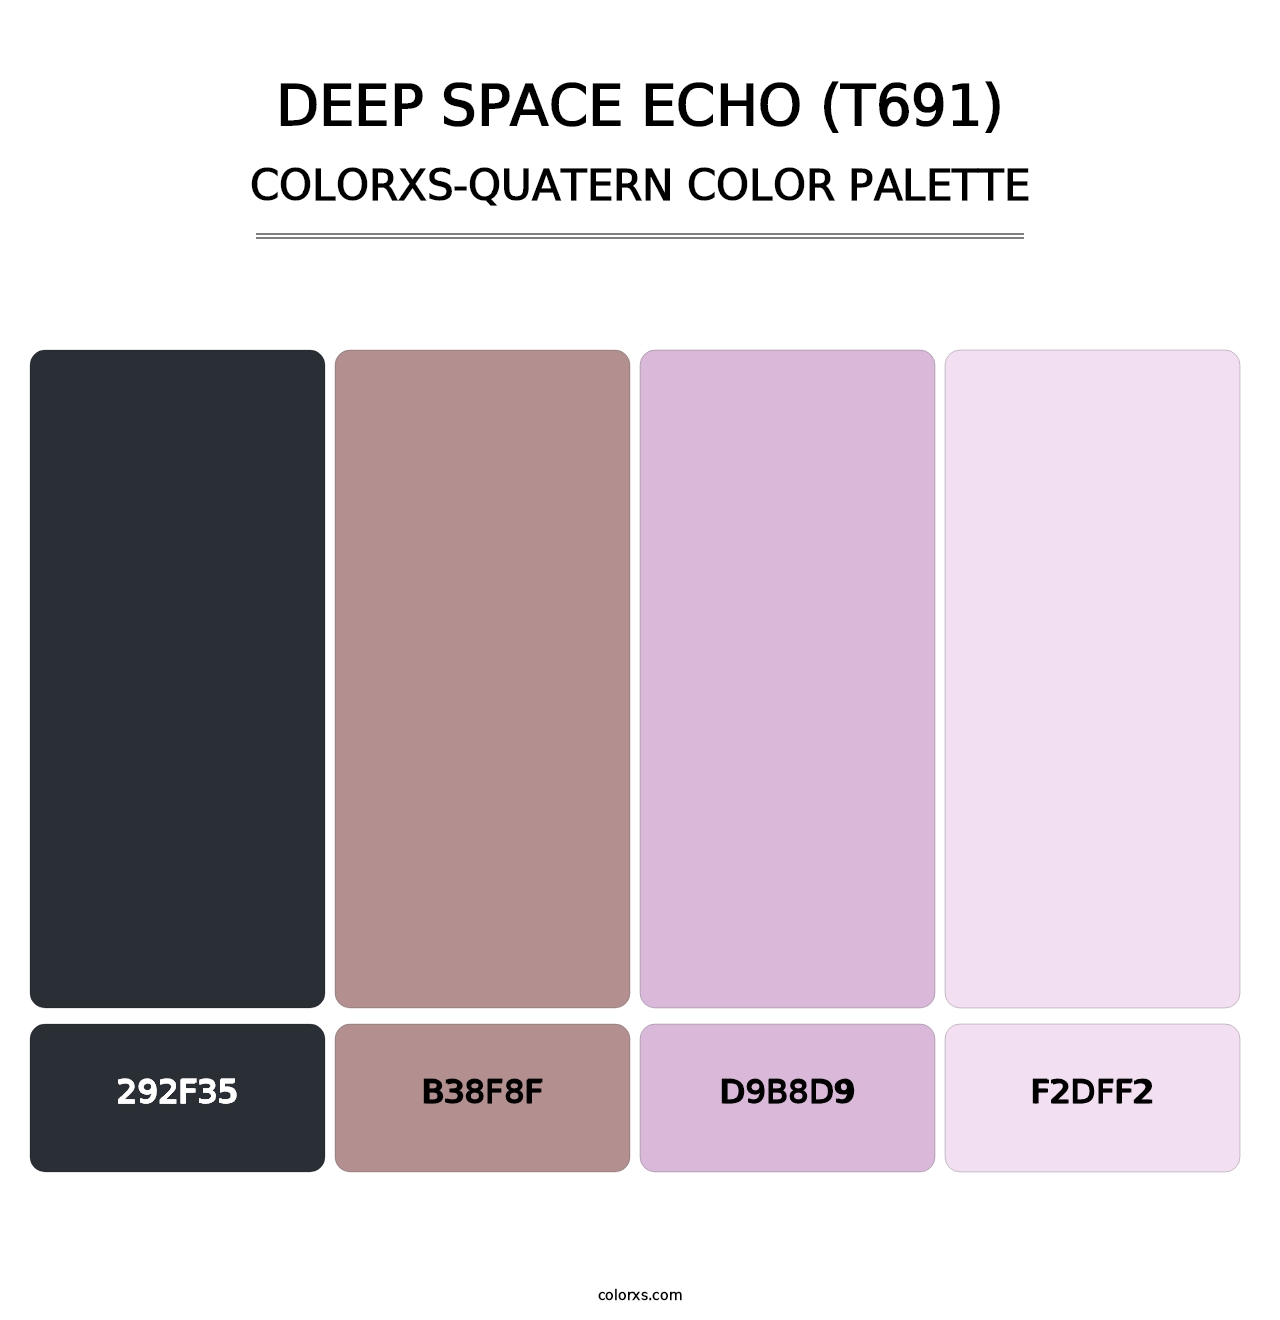 Deep Space Echo (T691) - Colorxs Quatern Palette